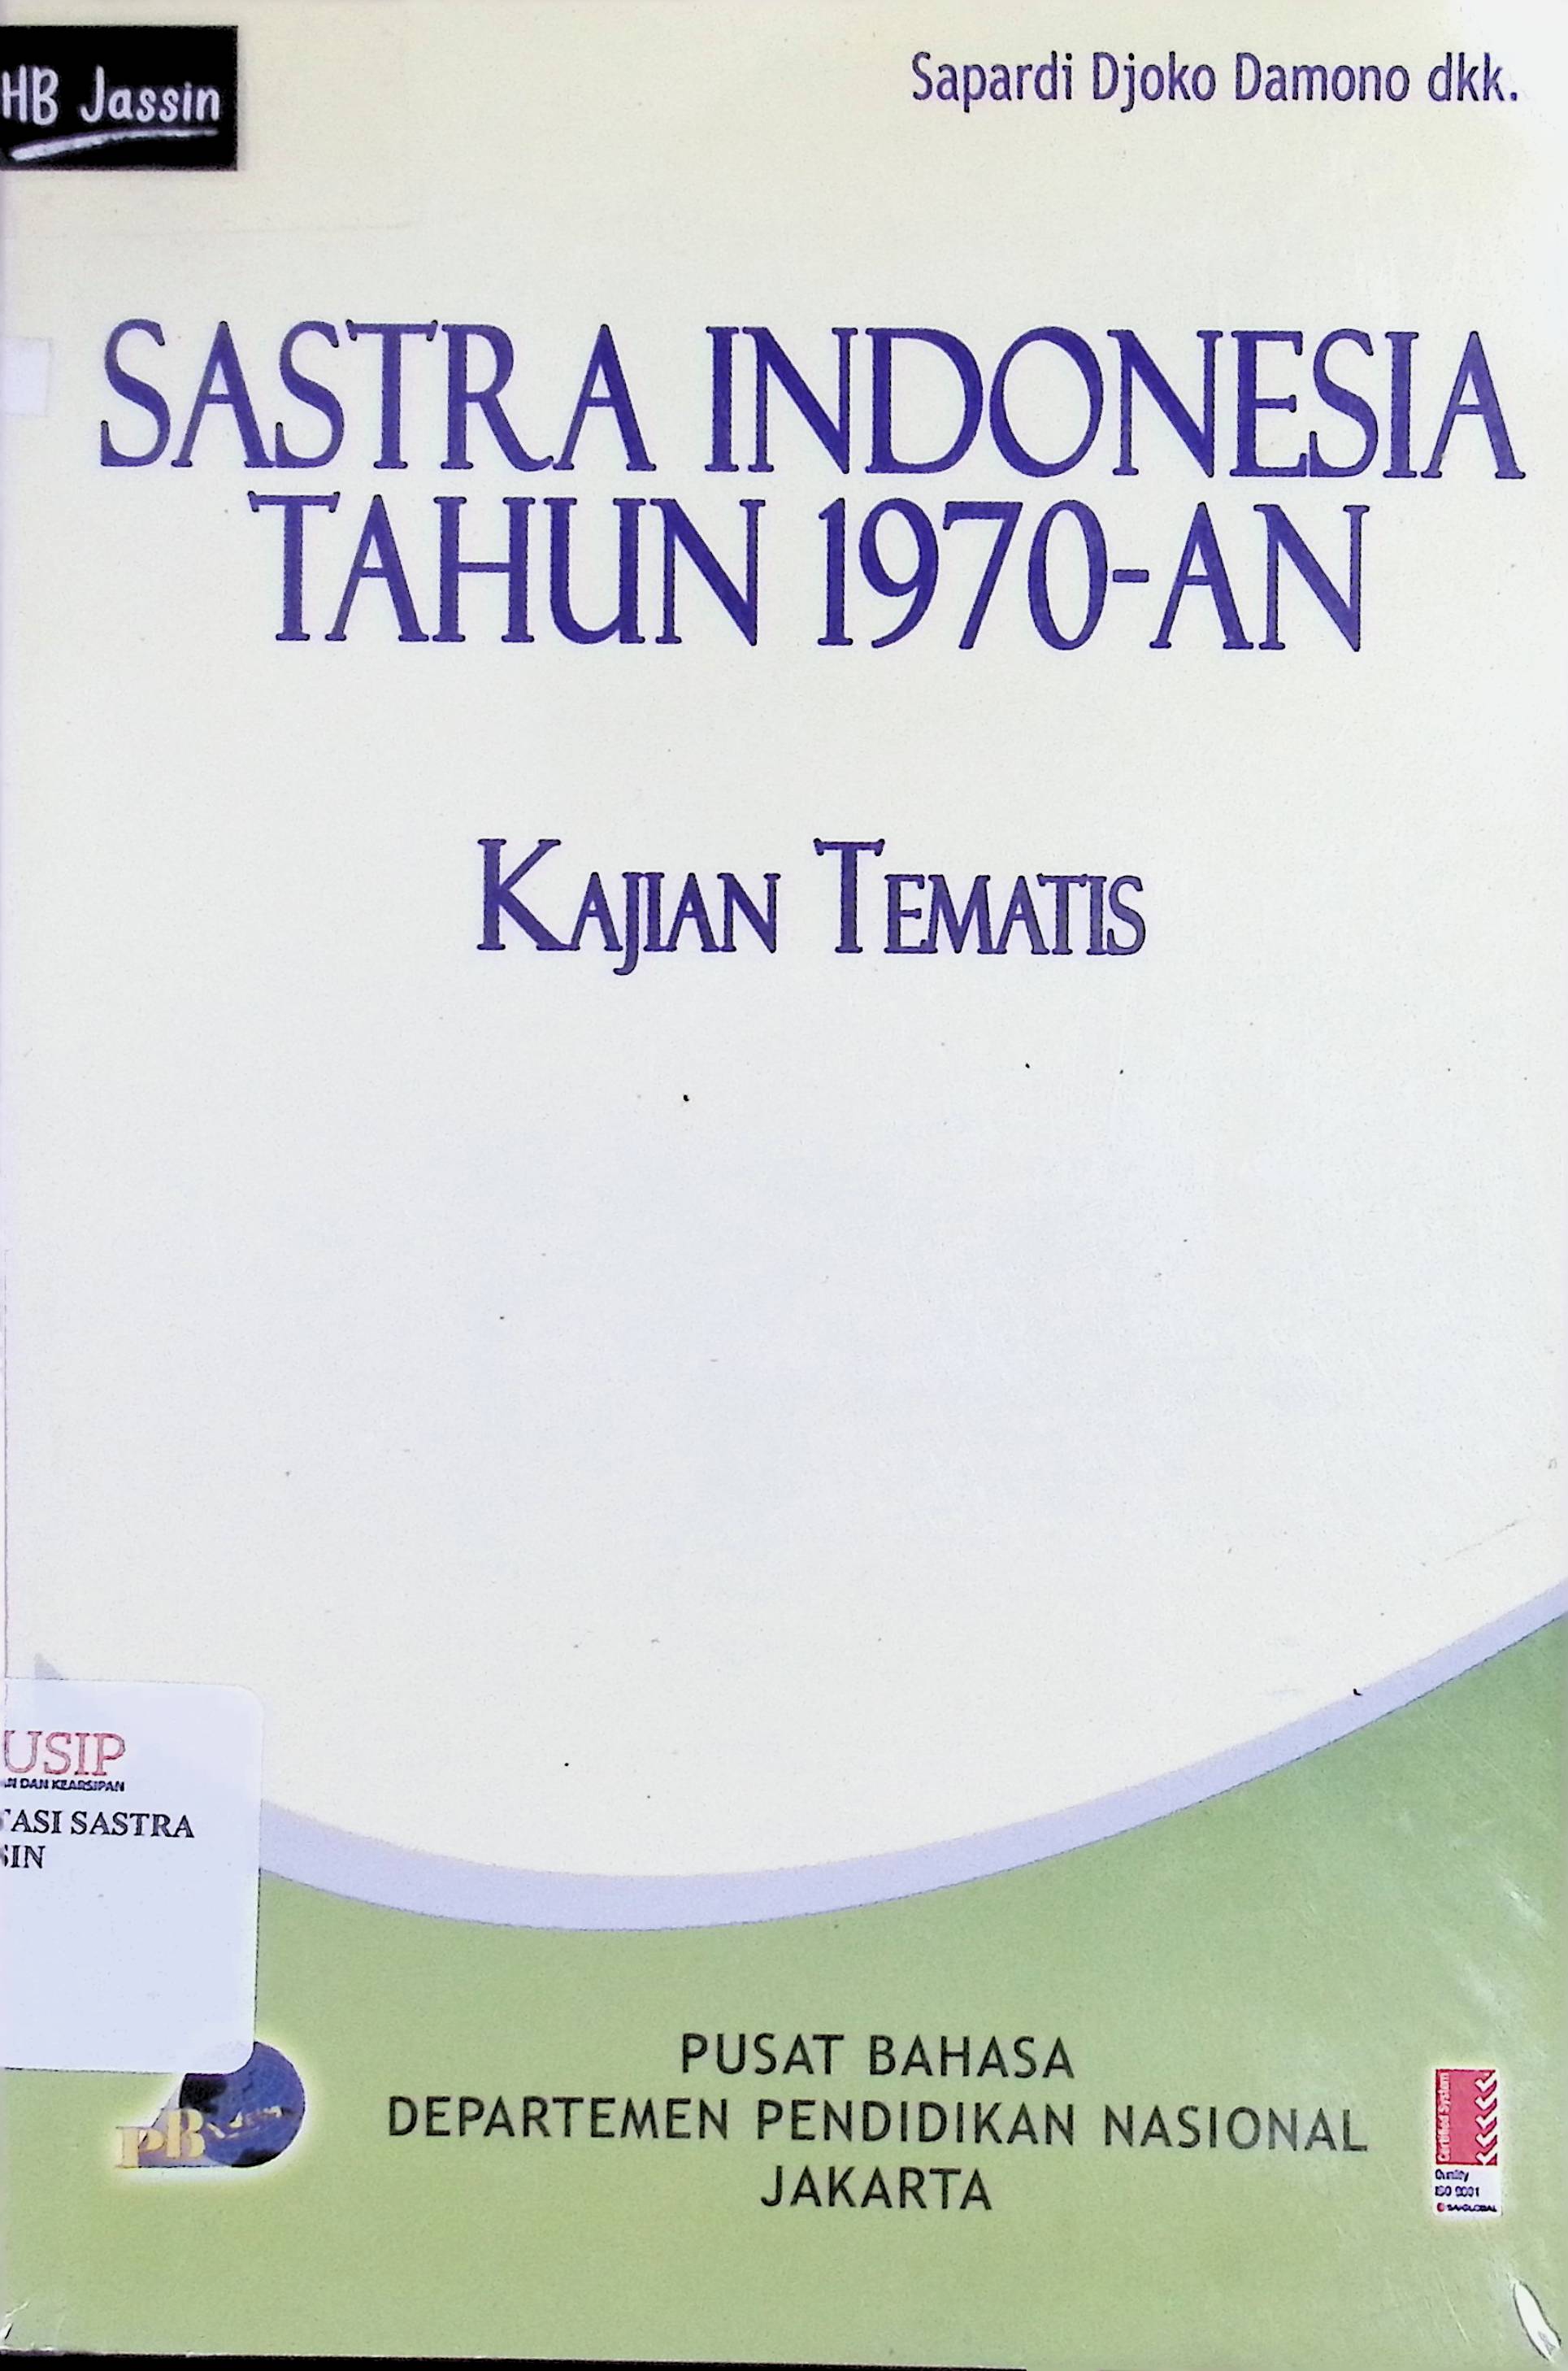 Sastra Indonesia tahun 1970-an: tematis